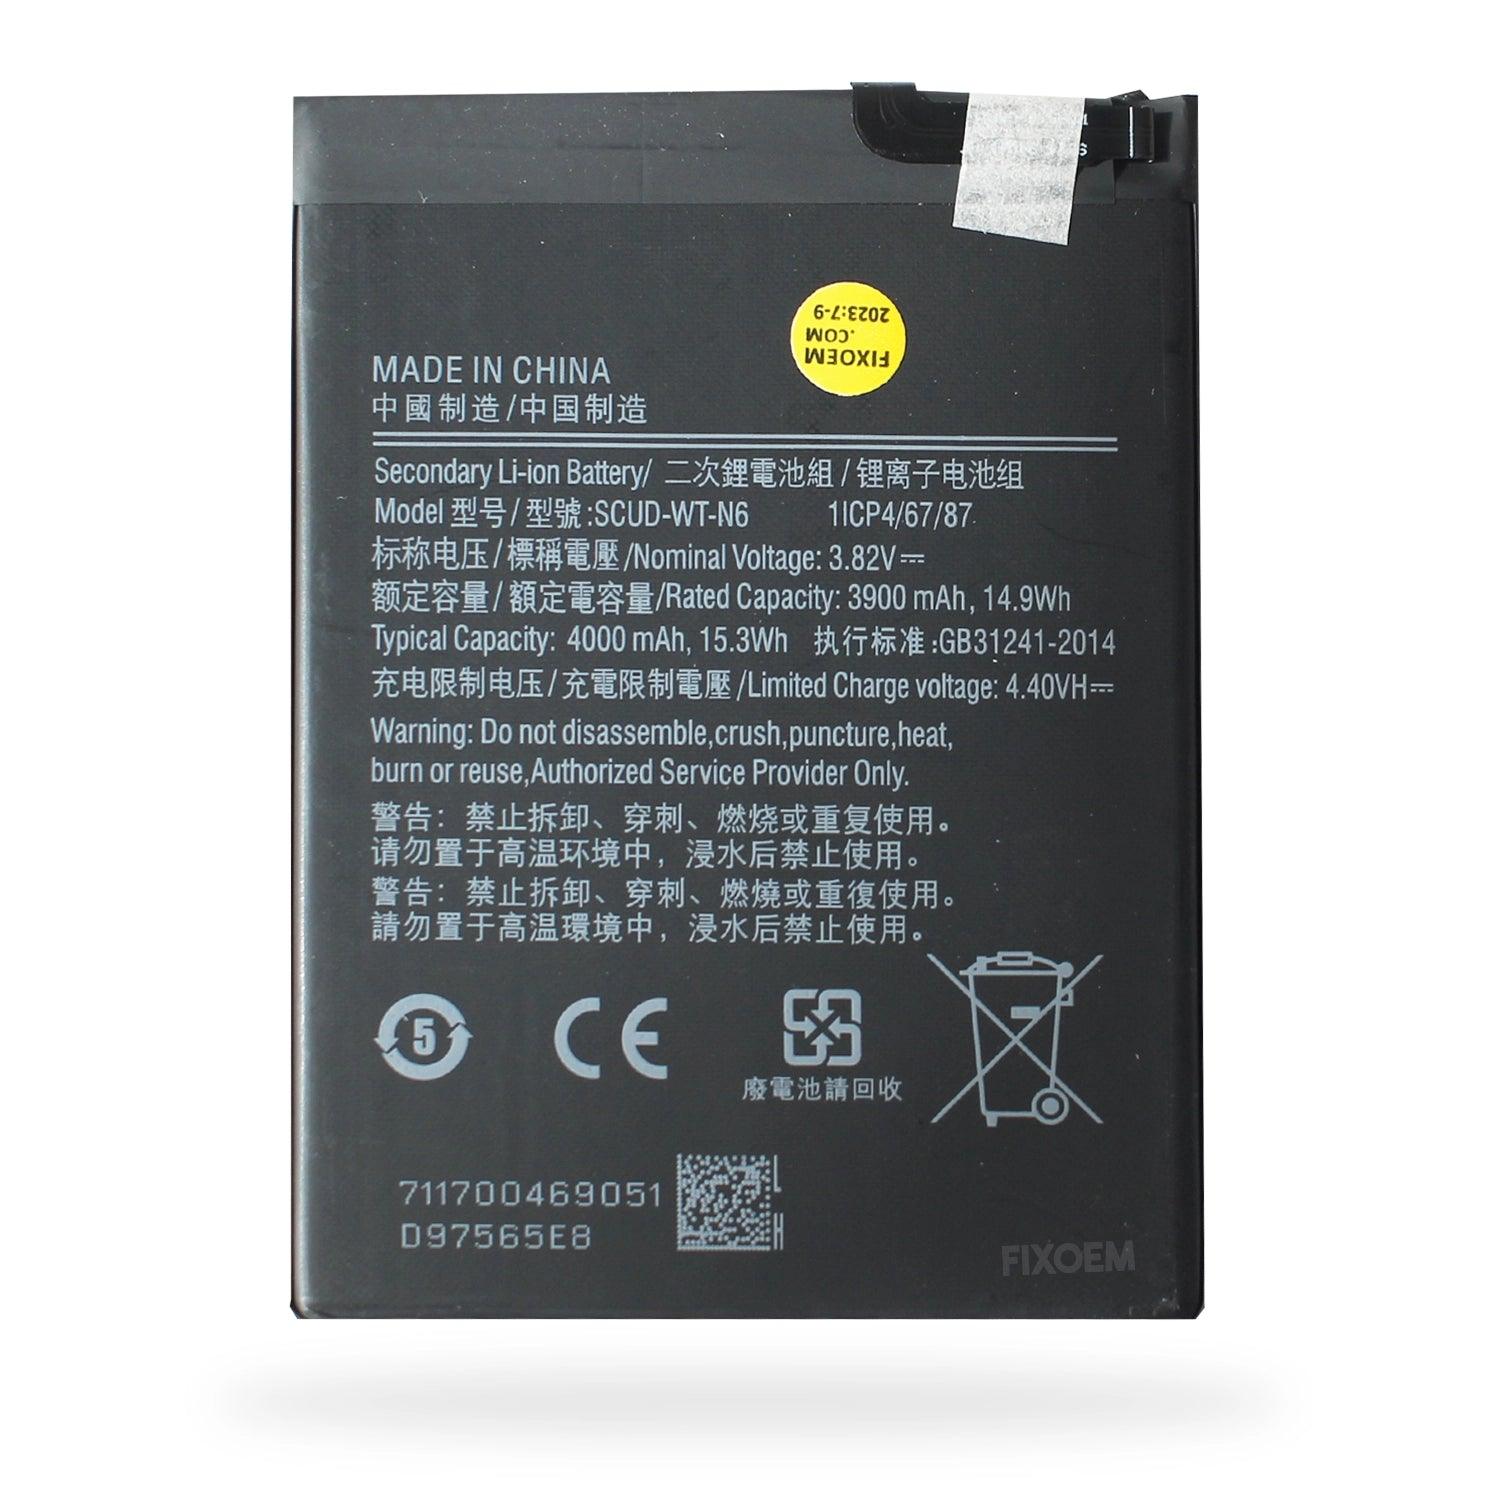 Bateria Samsung A10S / A20S / A21 Sm-A107M Sm-A207M Scud-Wt-N6. a solo $ 130.00 Refaccion y puestos celulares, refurbish y microelectronica.- FixOEM